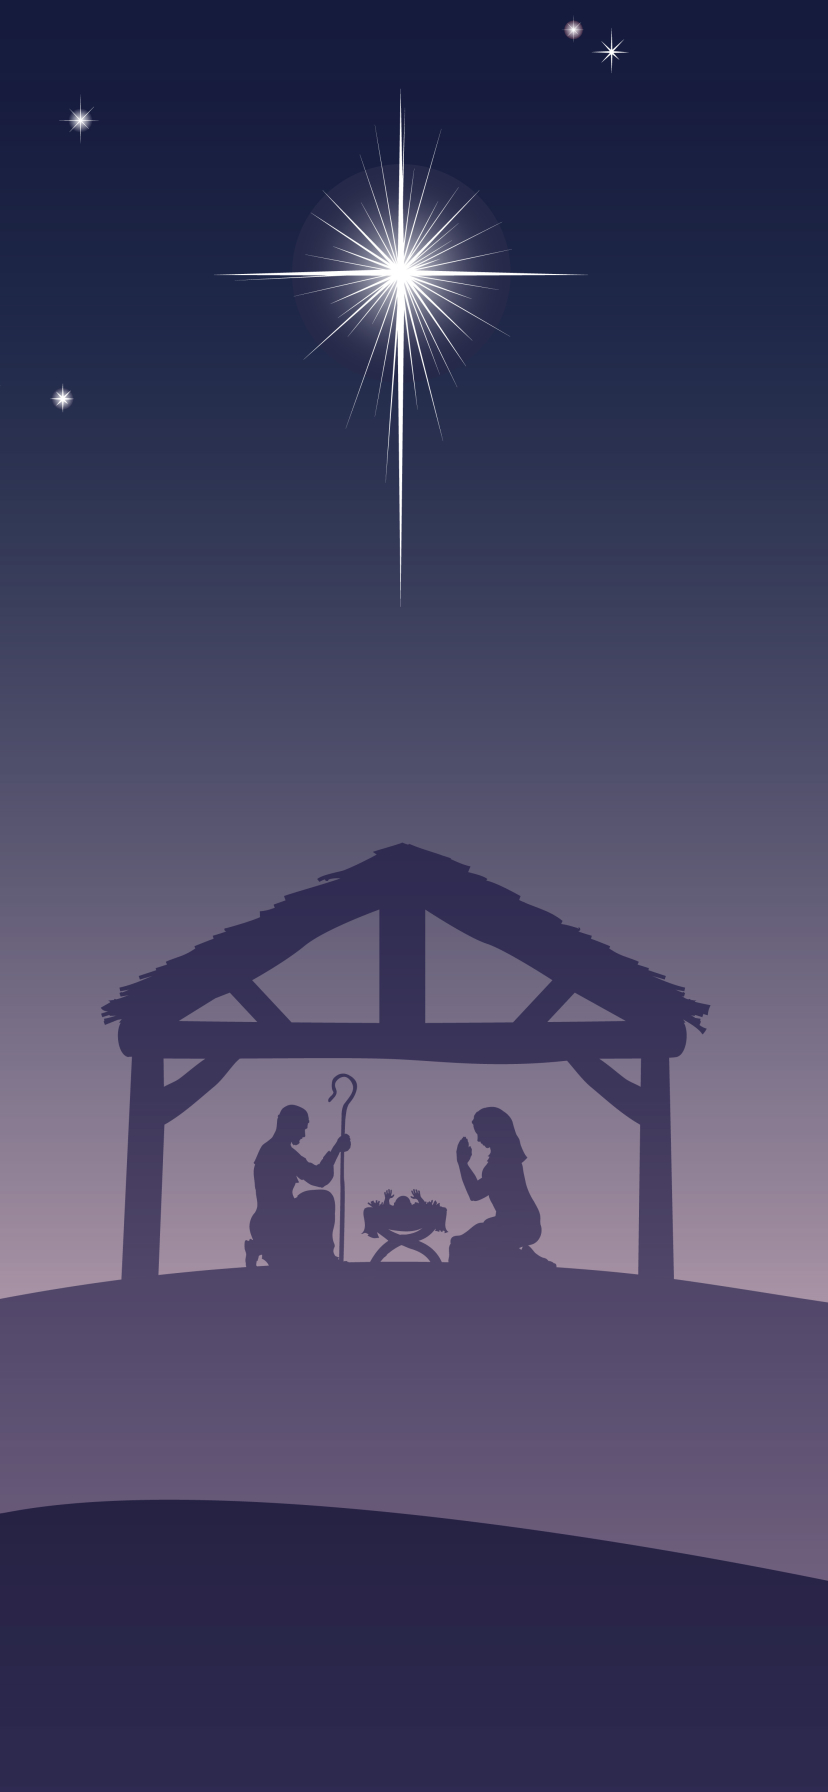 jesus, mary (mother of jesus), holiday, christmas, night, stars